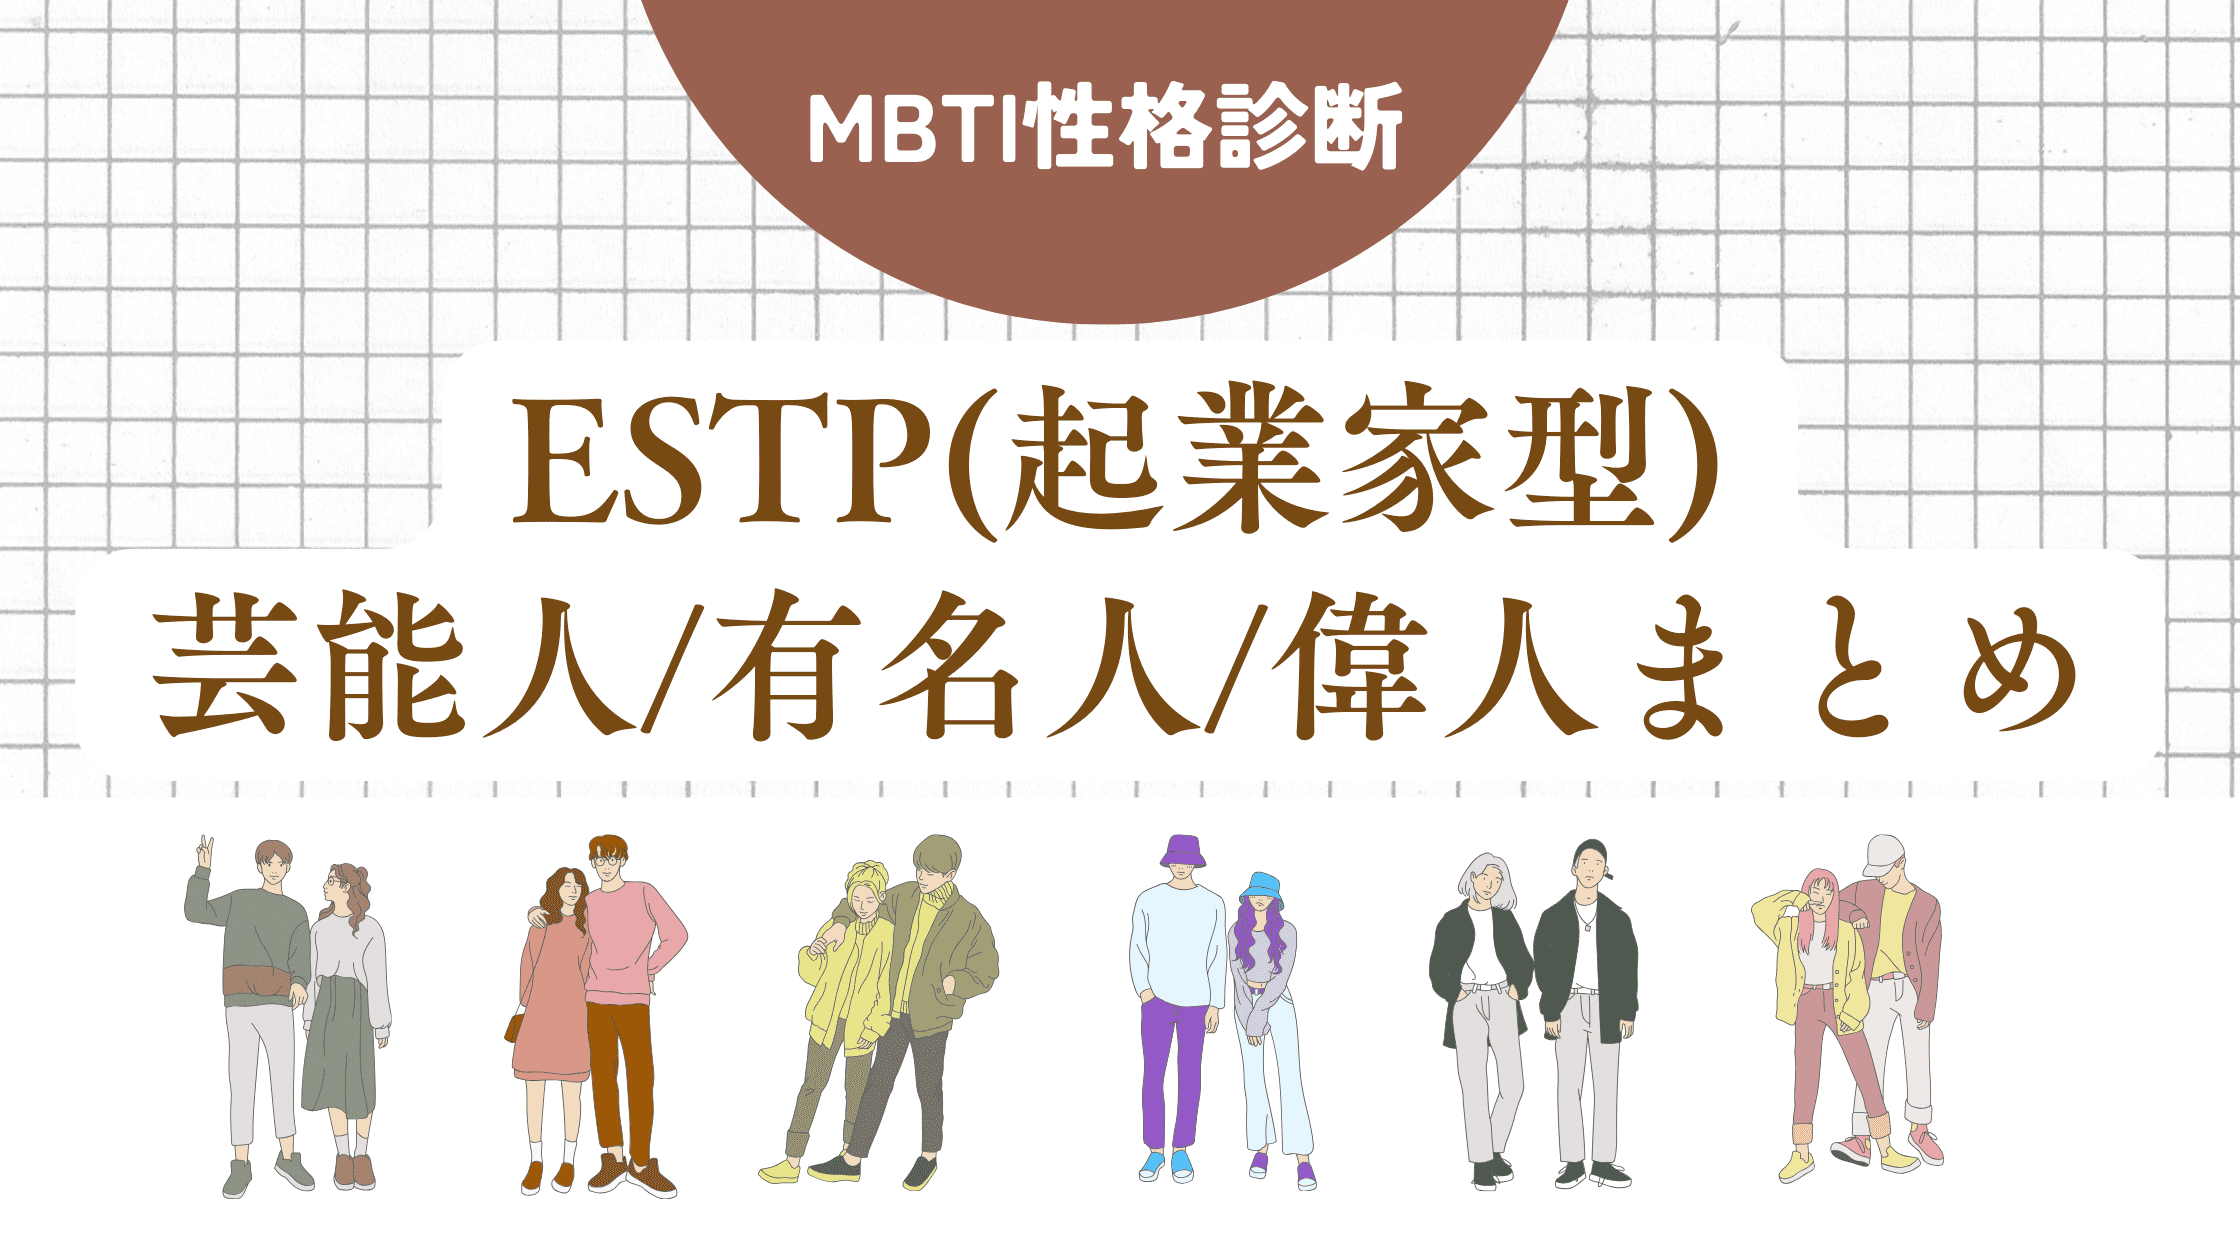 ESTP(起業家型)芸能人